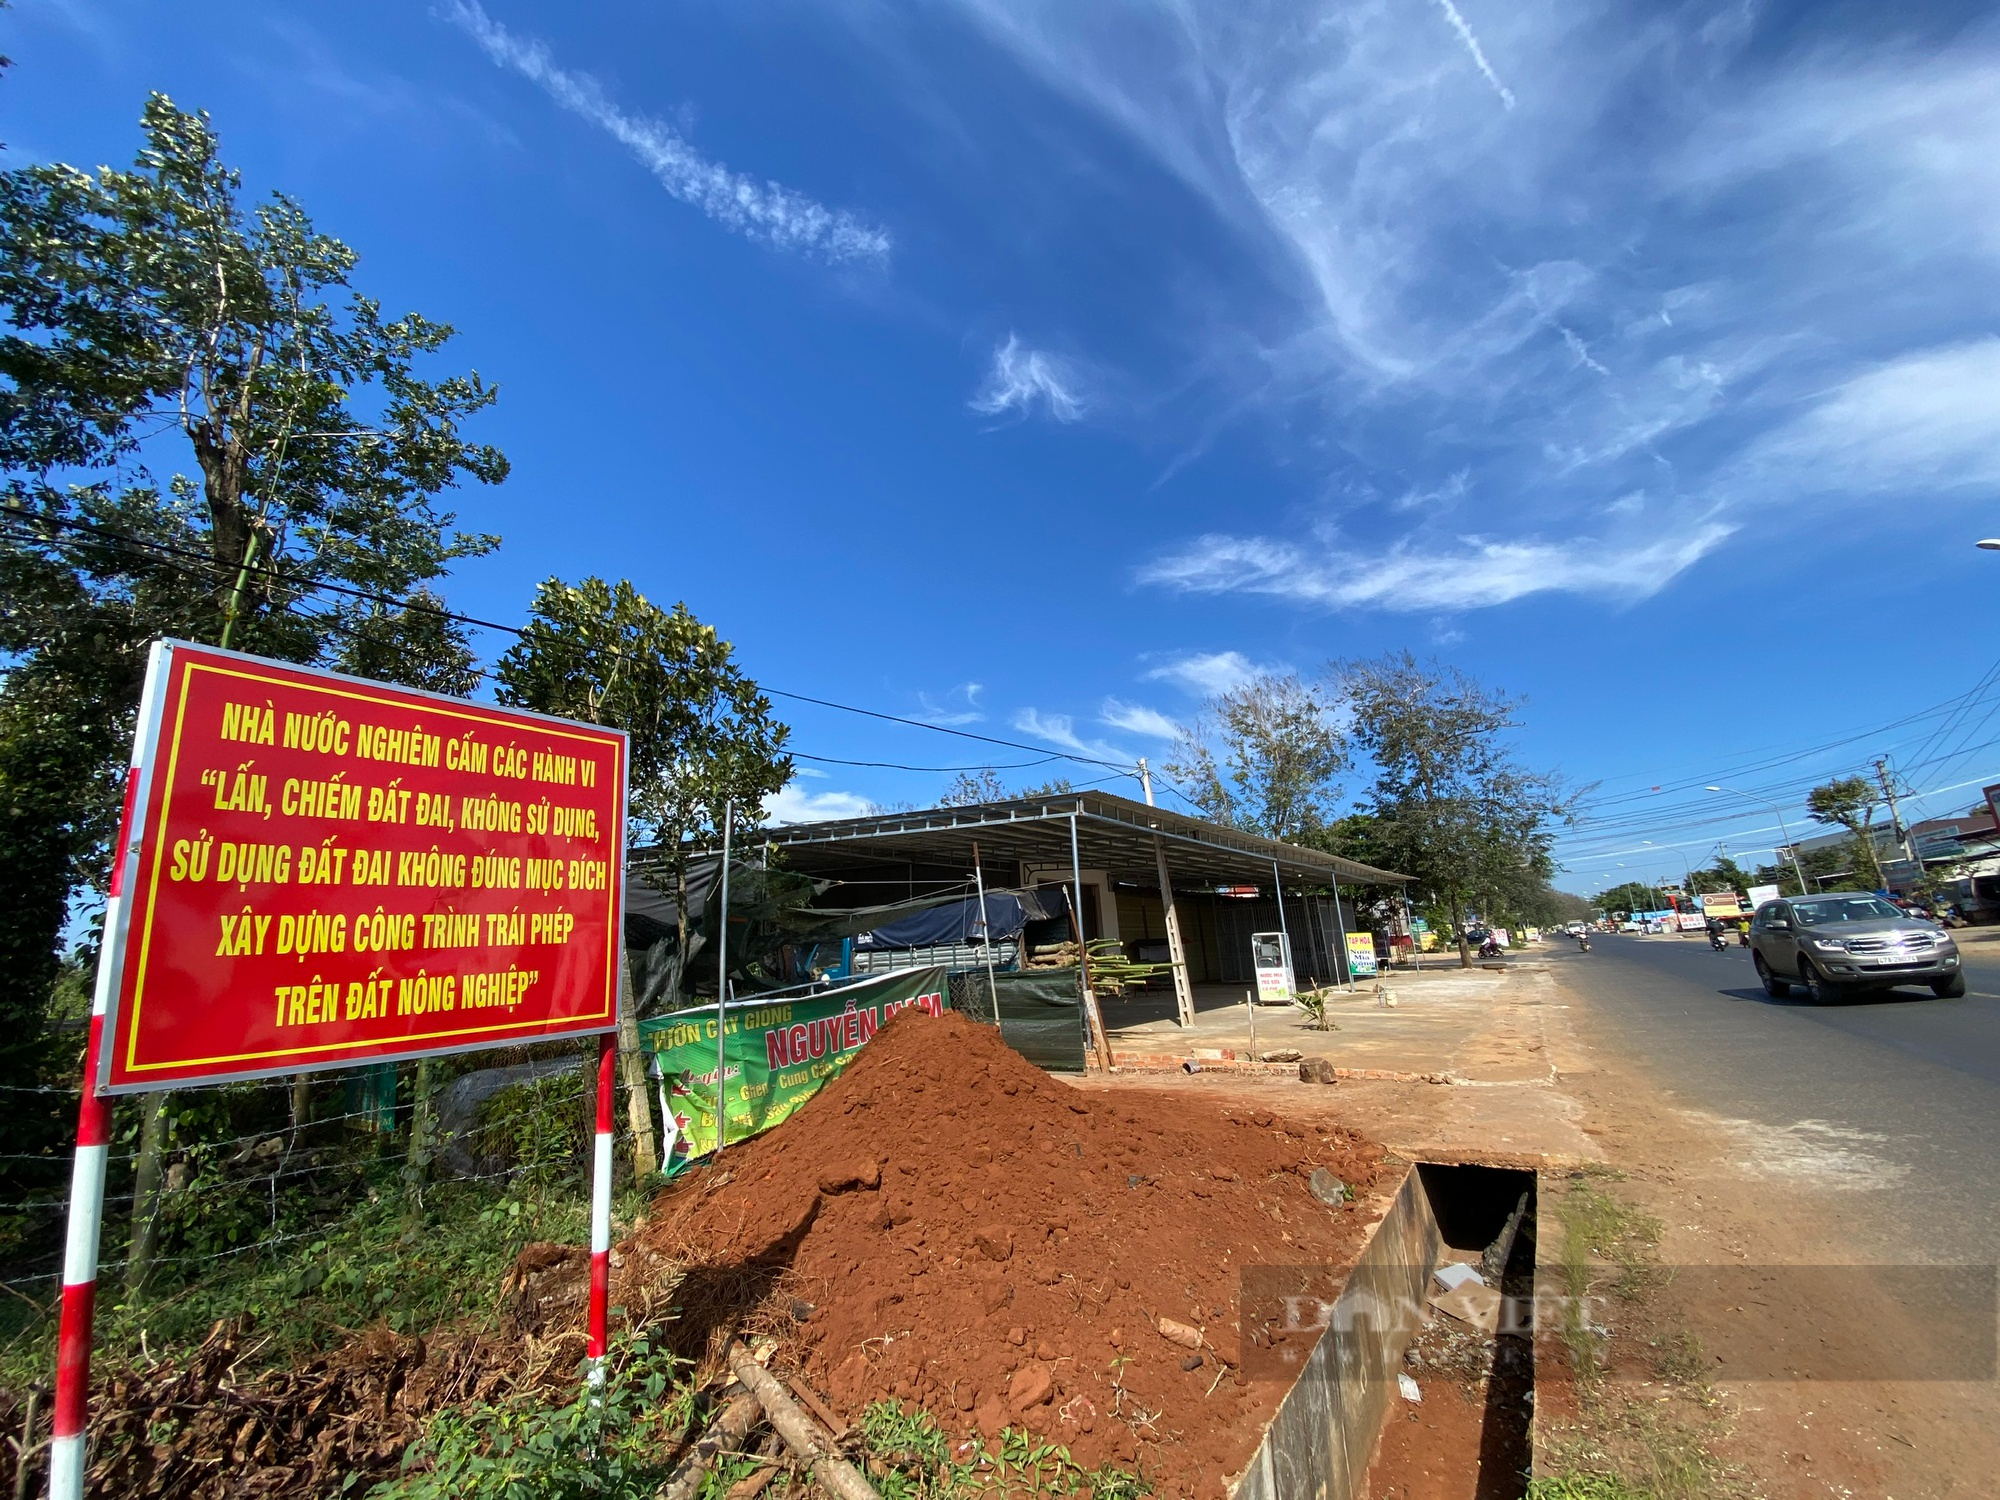 Đắk Lắk: Cưỡng chế 64 trường hợp xây nhà, chiếm đất của công ty cà phê - Ảnh 2.